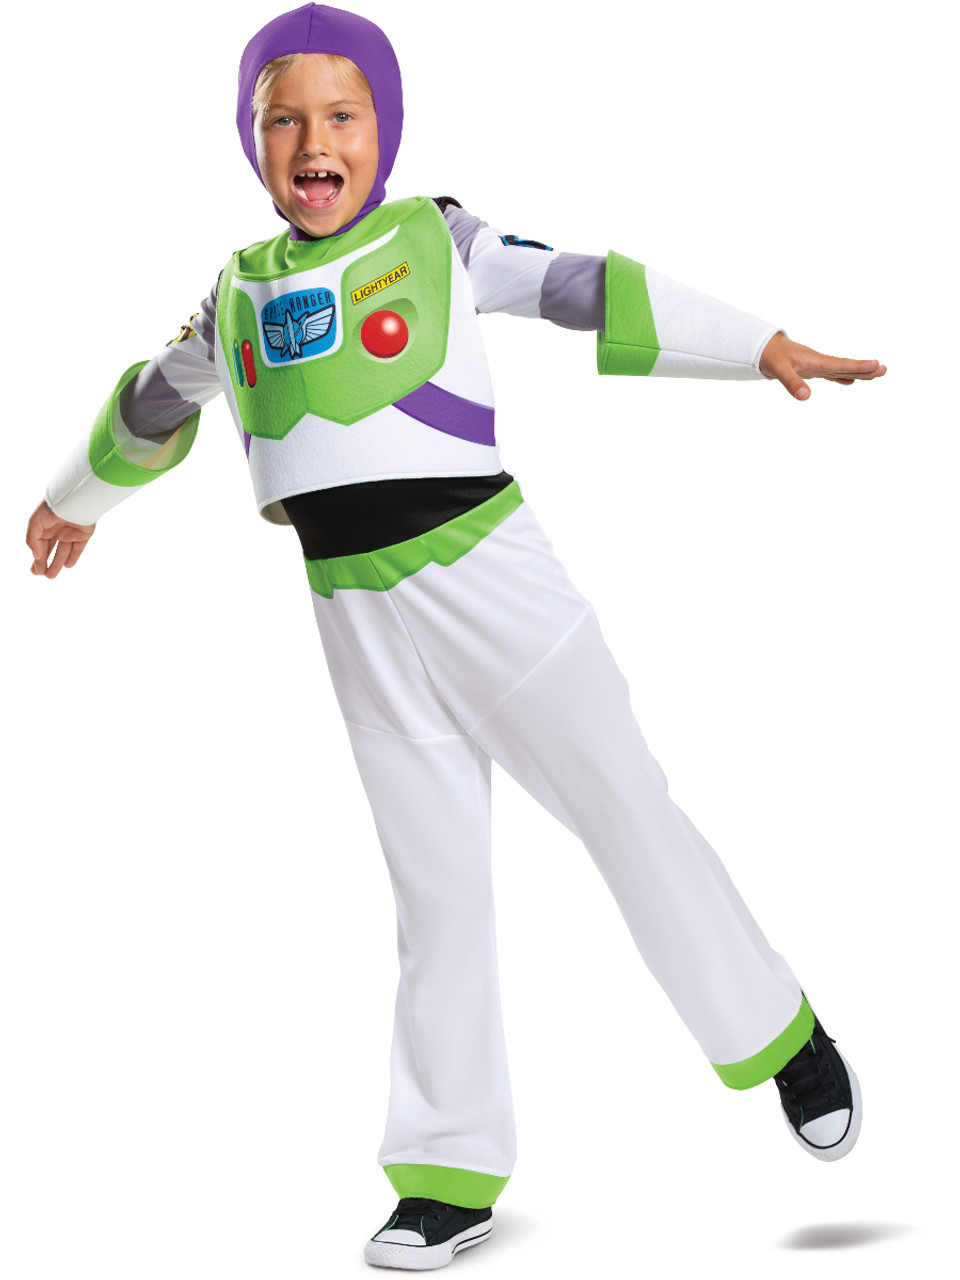 Toy Story 4 Buzz Lightyear Classic Boy's Costume